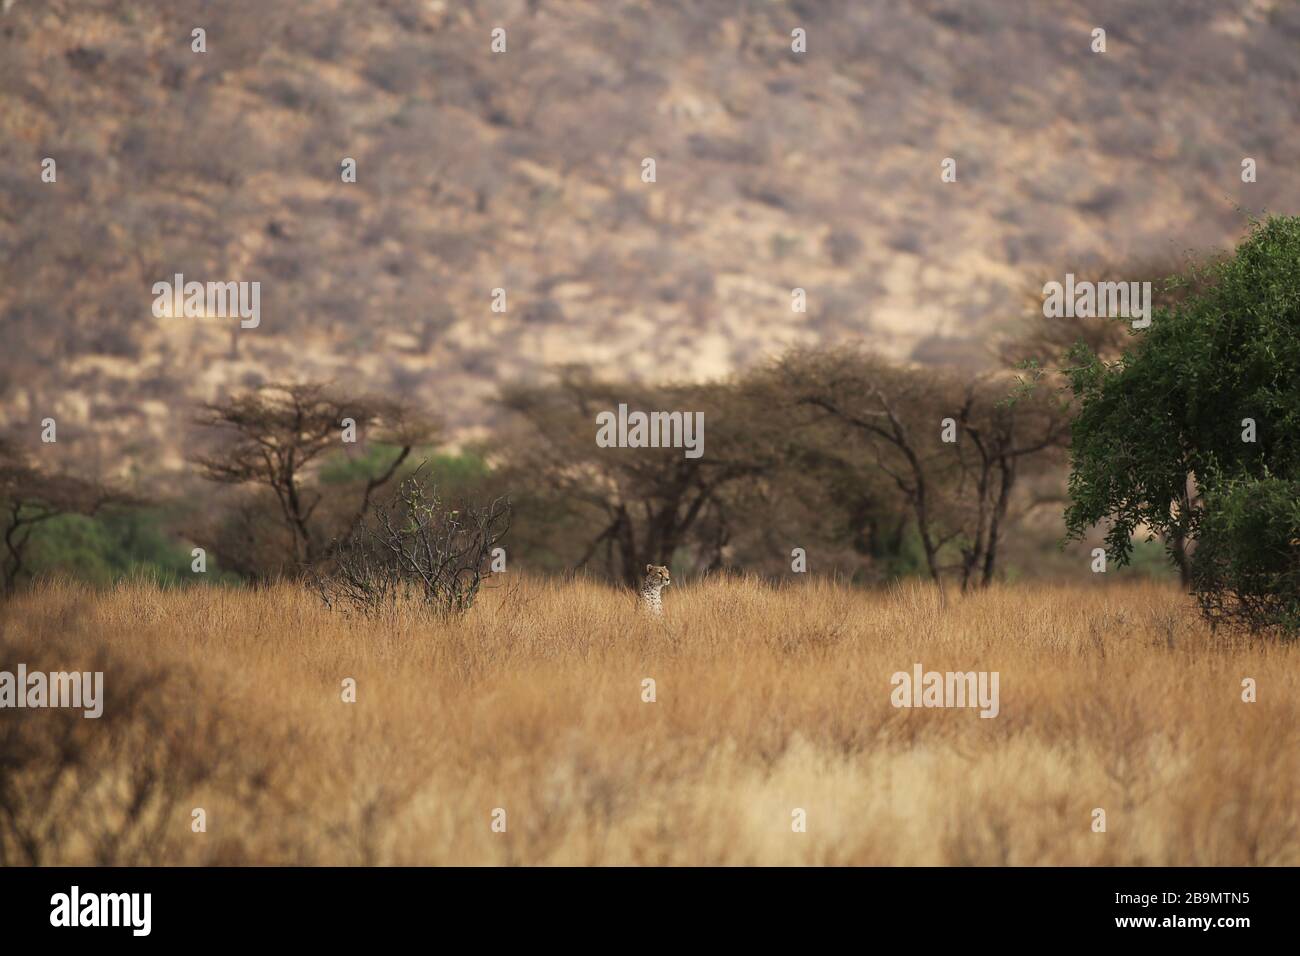 Une guépard scanne son environnement au milieu d'une grande herbe sèche. Réserve nationale de Samburu, Kenya. Banque D'Images